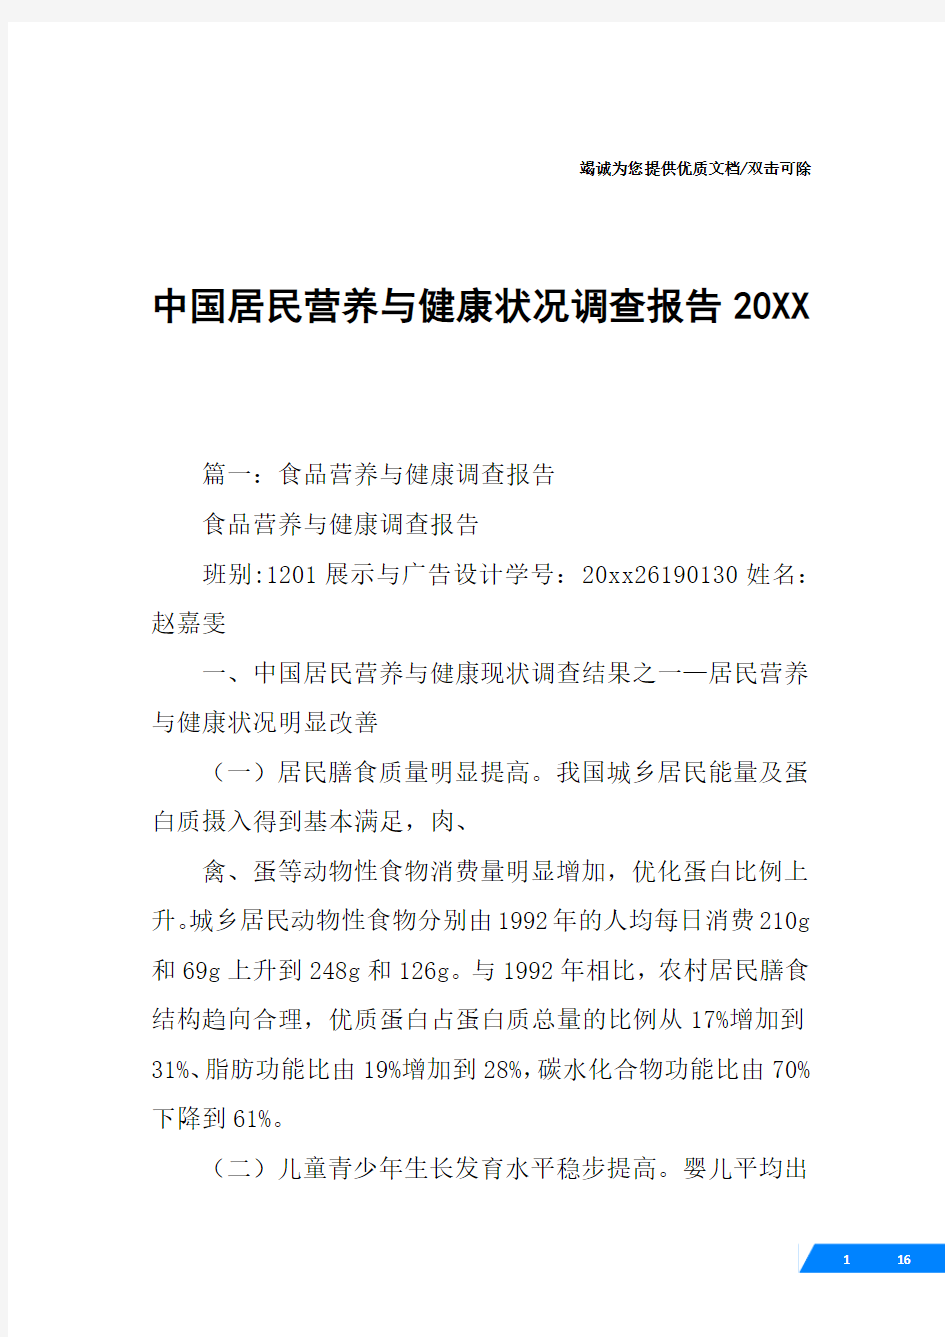 中国居民营养与健康状况调查报告20XX